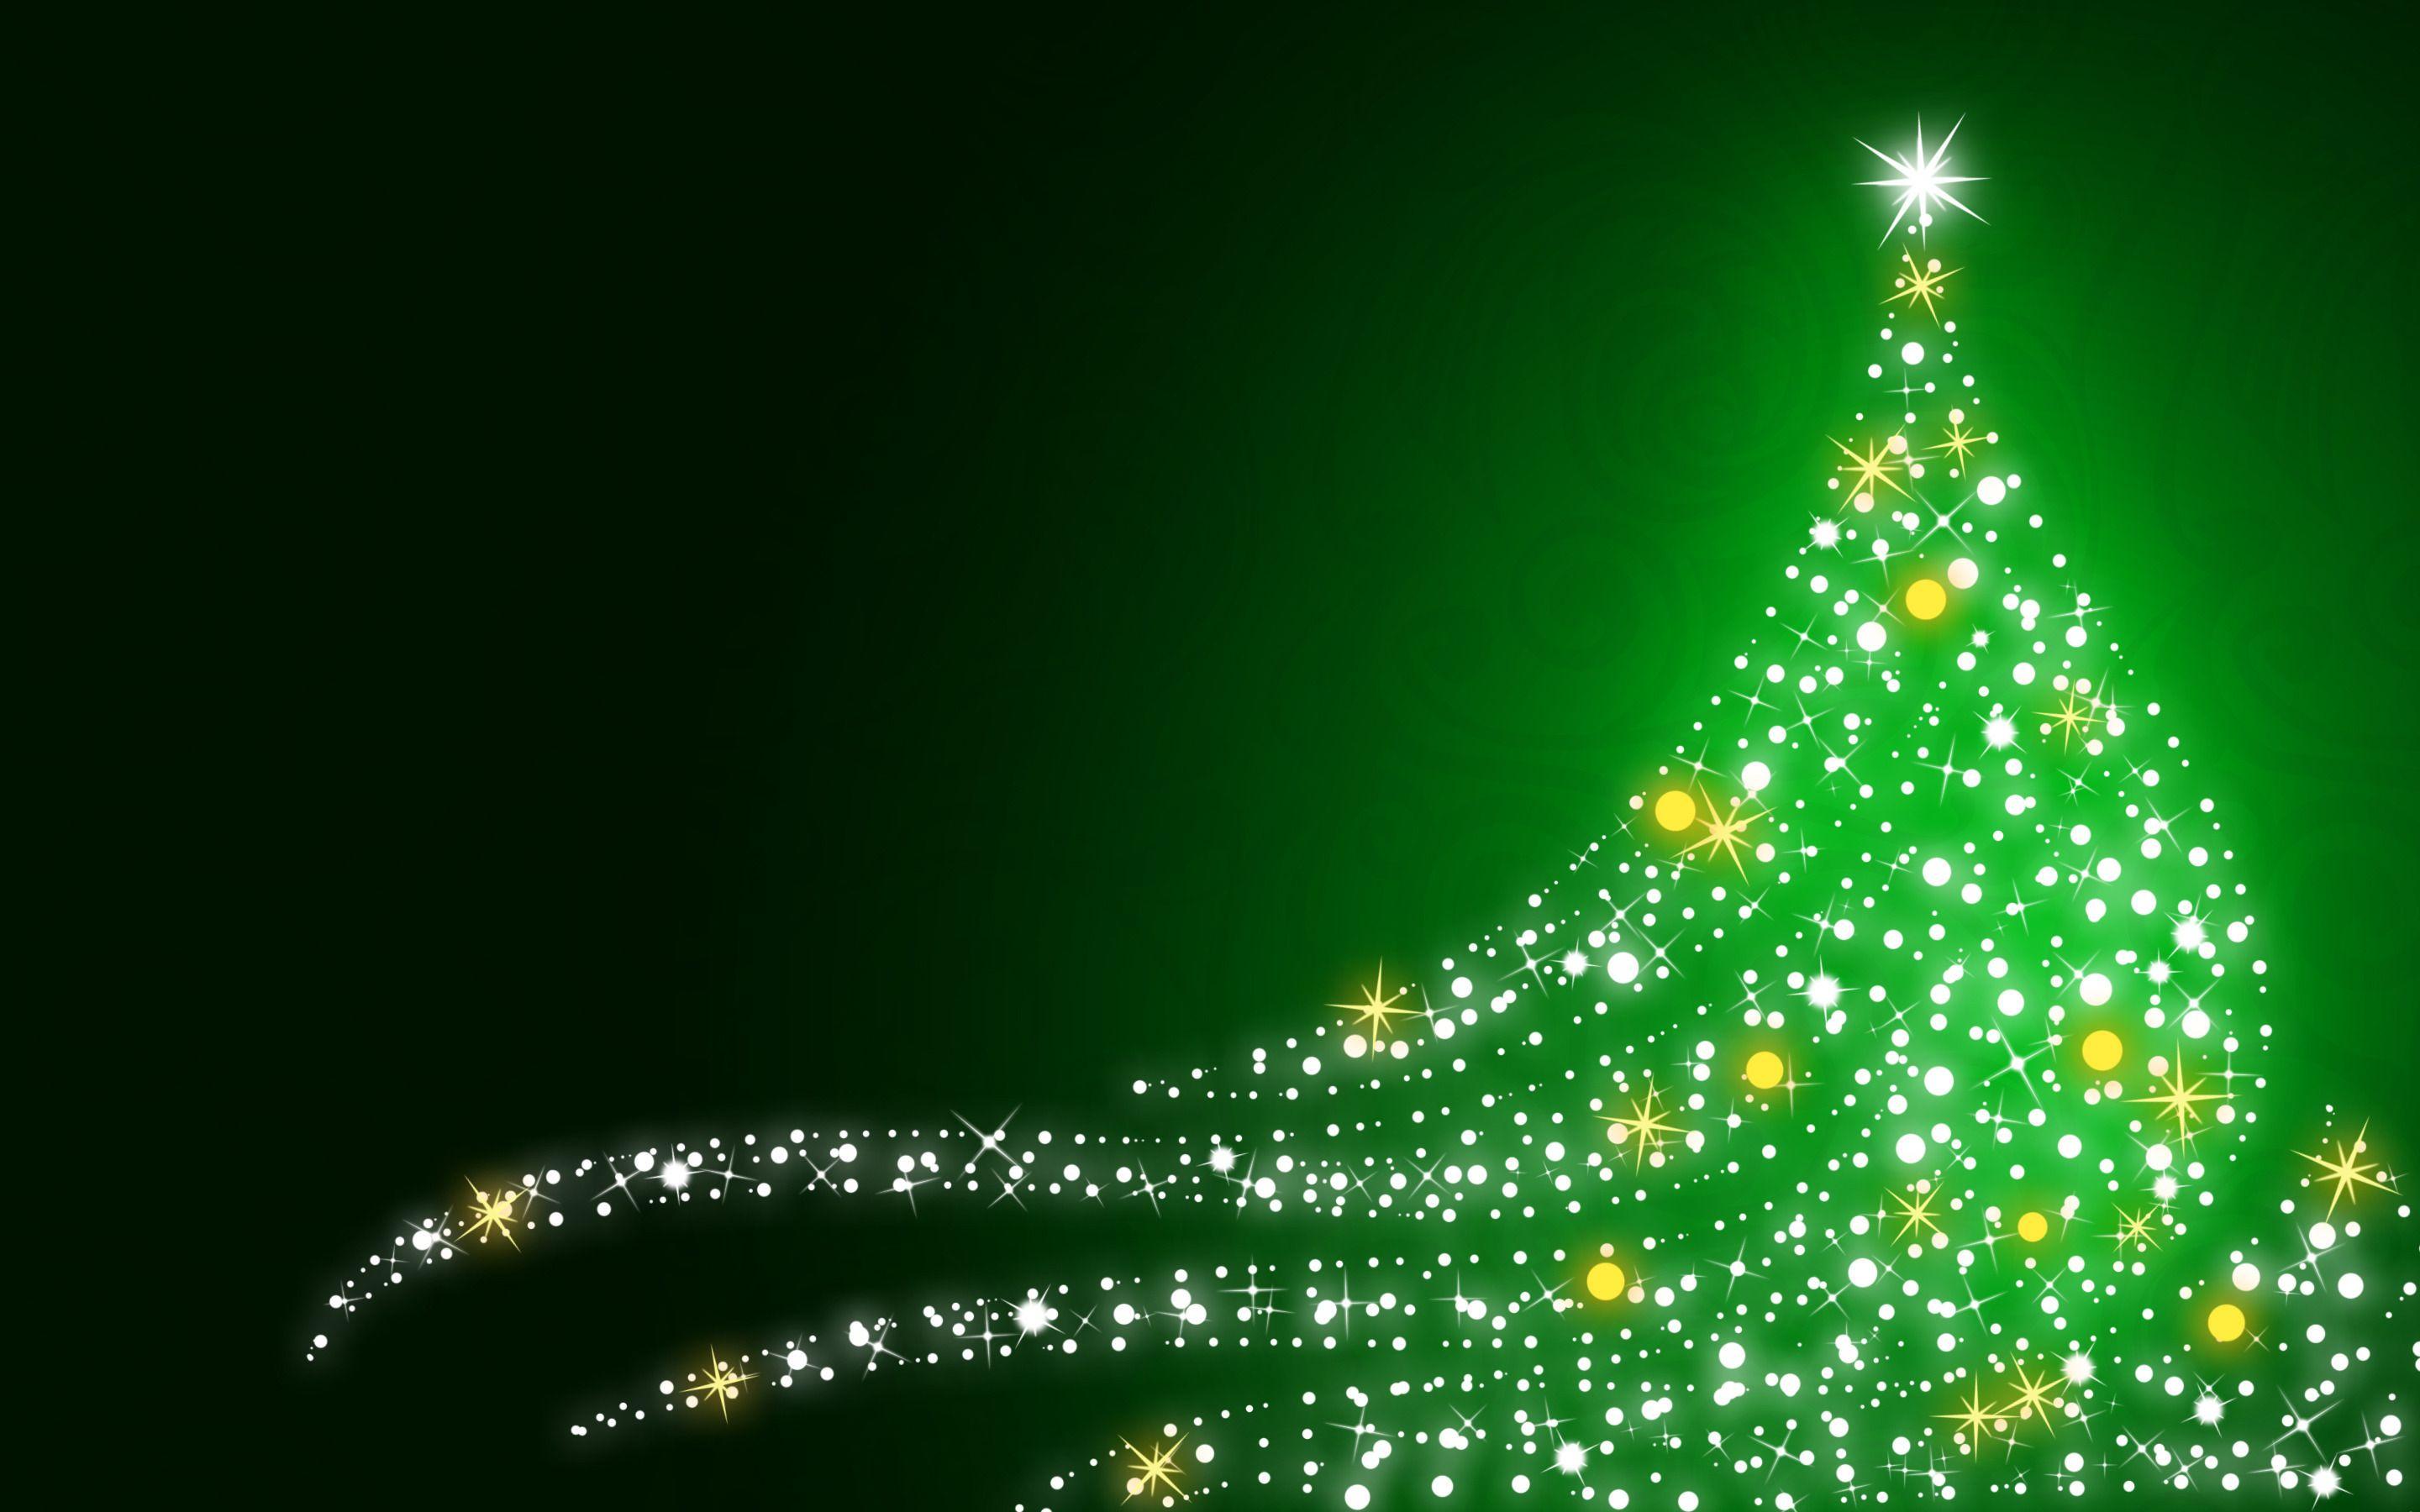 Hình nền Giáng sinh màu xanh lá cây rất phù hợp để tạo không khí lễ hội cho thiết bị của bạn. Sắc xanh lá cây tươi tắn và sinh động sẽ mang lại cảm giác đầy sức sống cho màn hình của bạn.